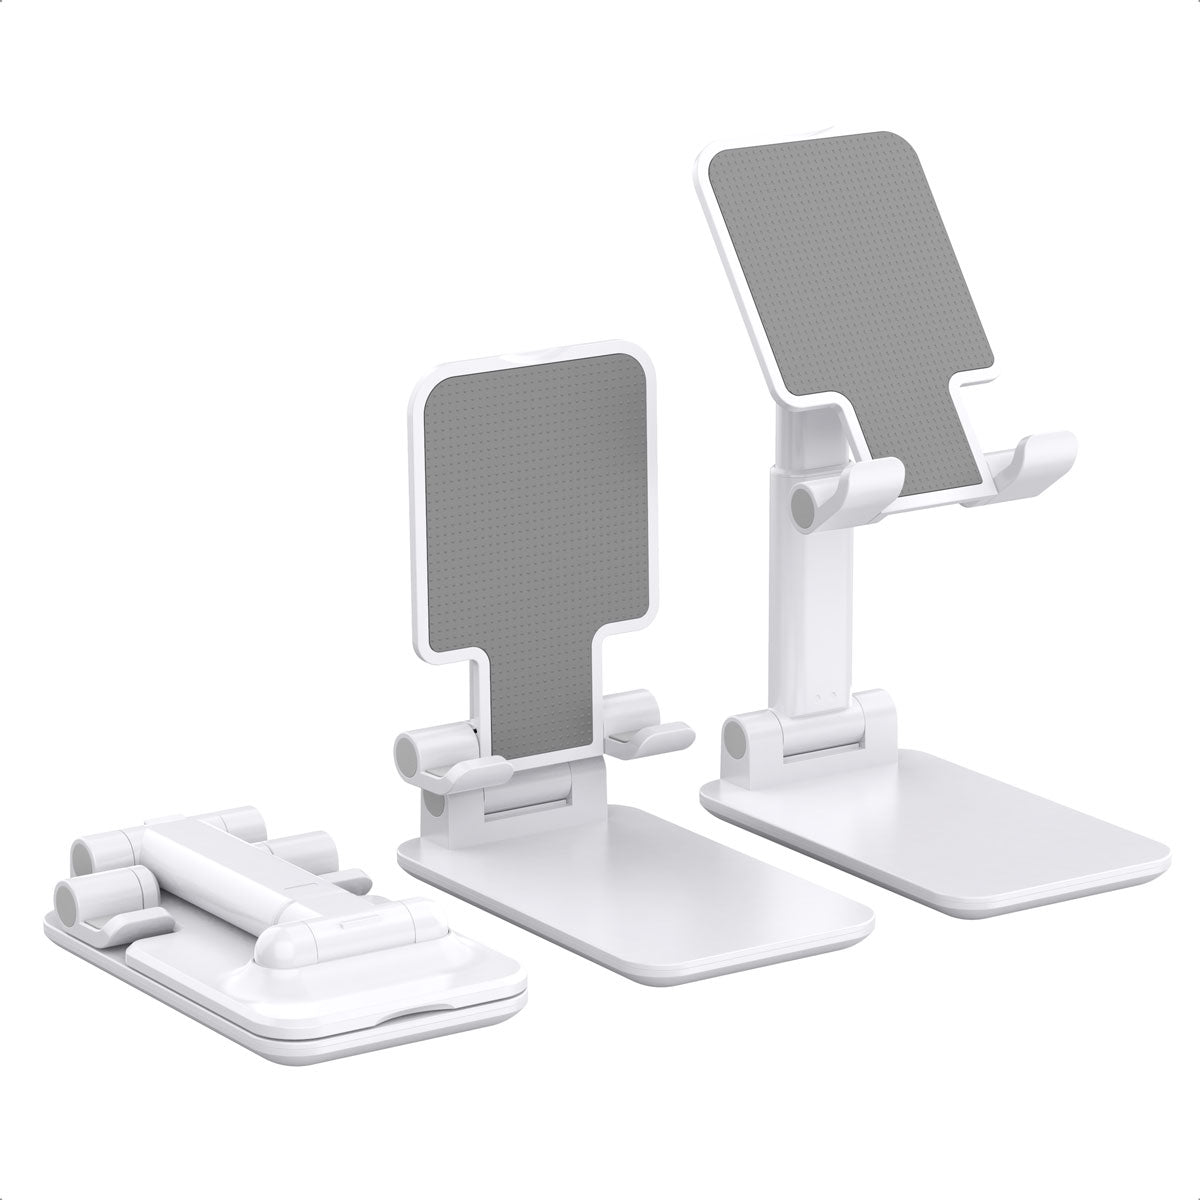 H88 CHOETECH Verstellbarer Schreibtisch-Tablet-Ständer, winkelhöhenverstellbarer Handy- und Tablet-Ständerhalter für 4 ~ 12,9 Zoll